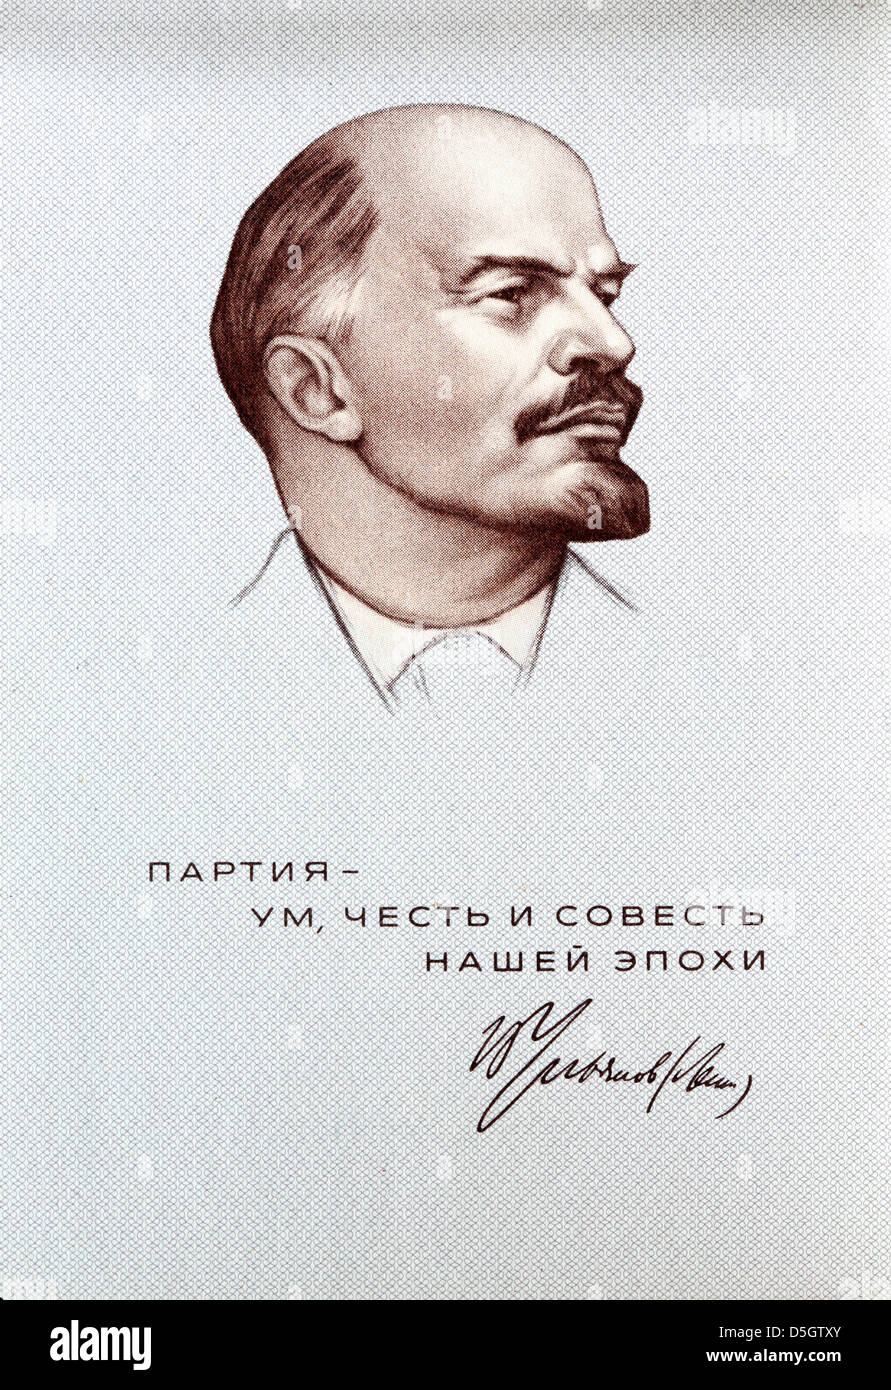 Porträt von Vladimir Lenin aus der kommunistischen Partei der Sowjetunion Mitgliedskarte, 1973 Stockfoto